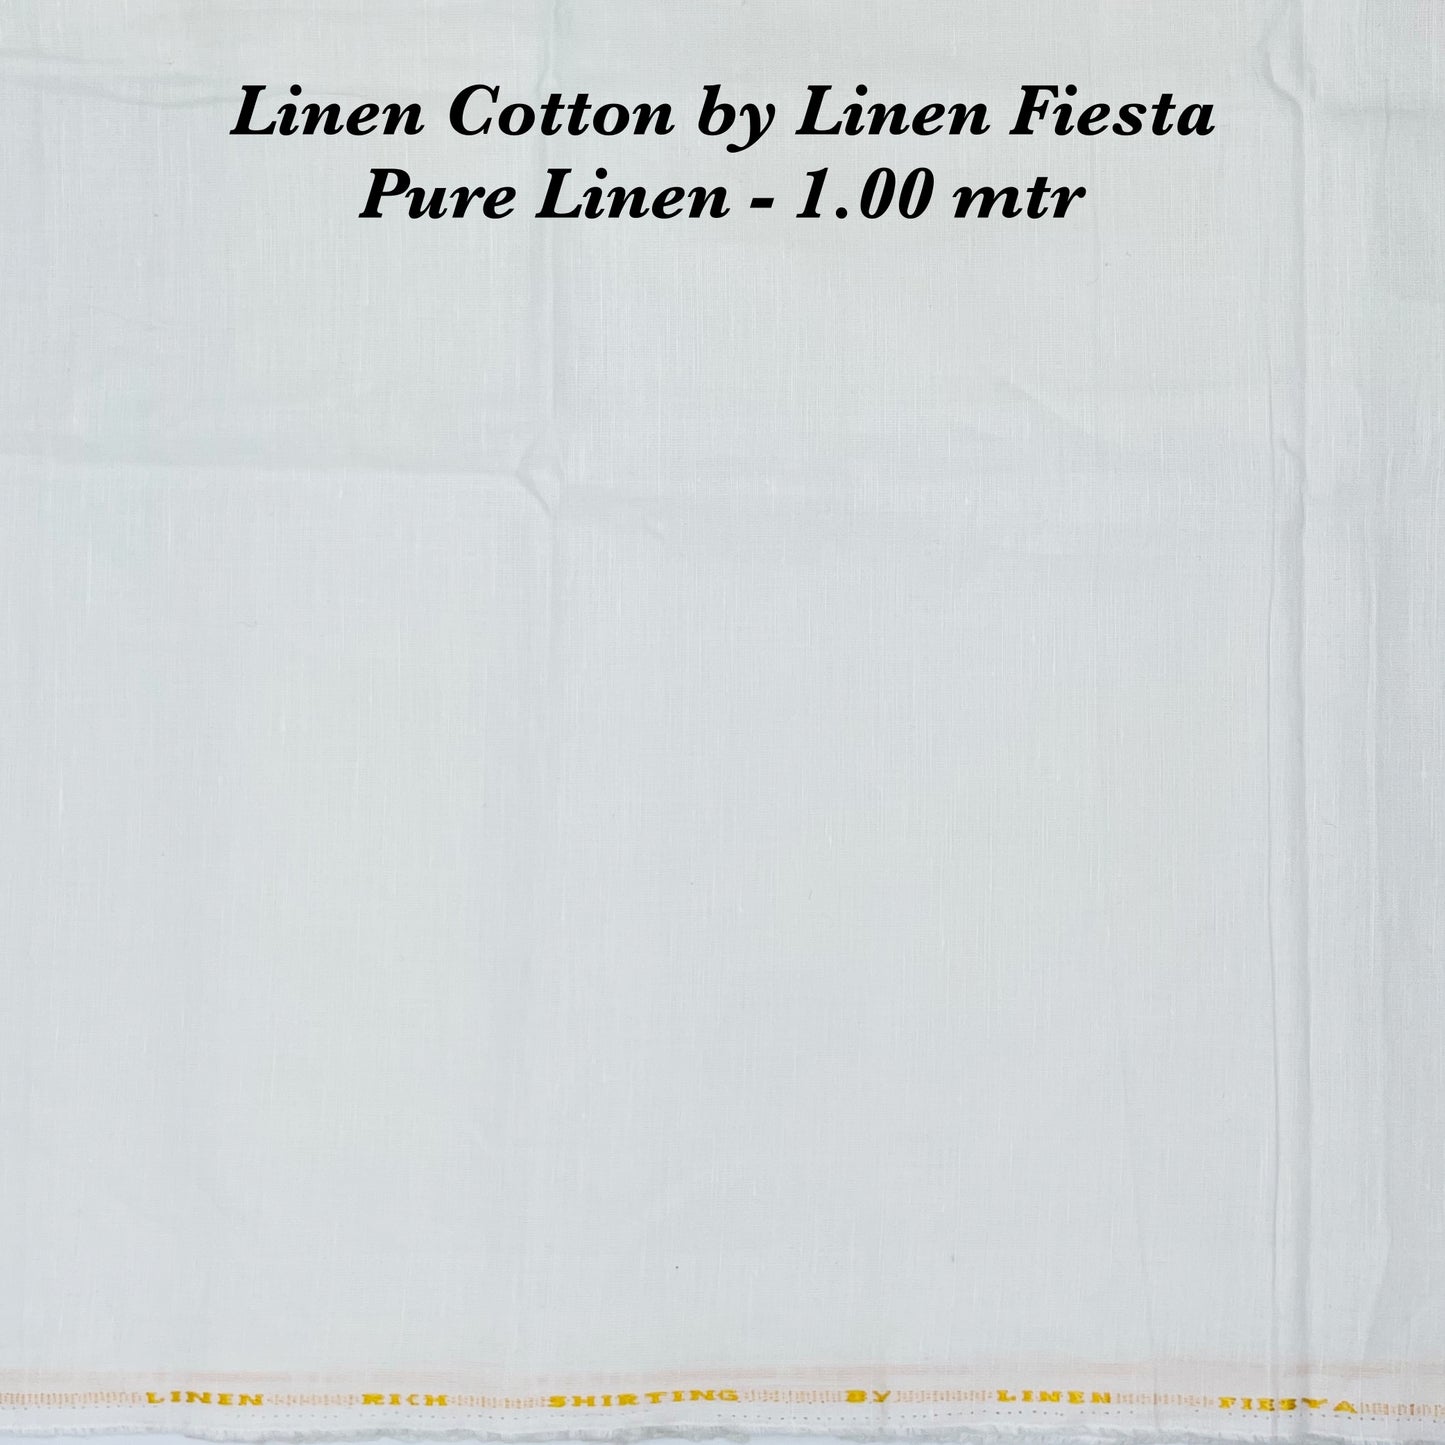 1.00 Mtr Shirting Fabric - END BIT (60%)